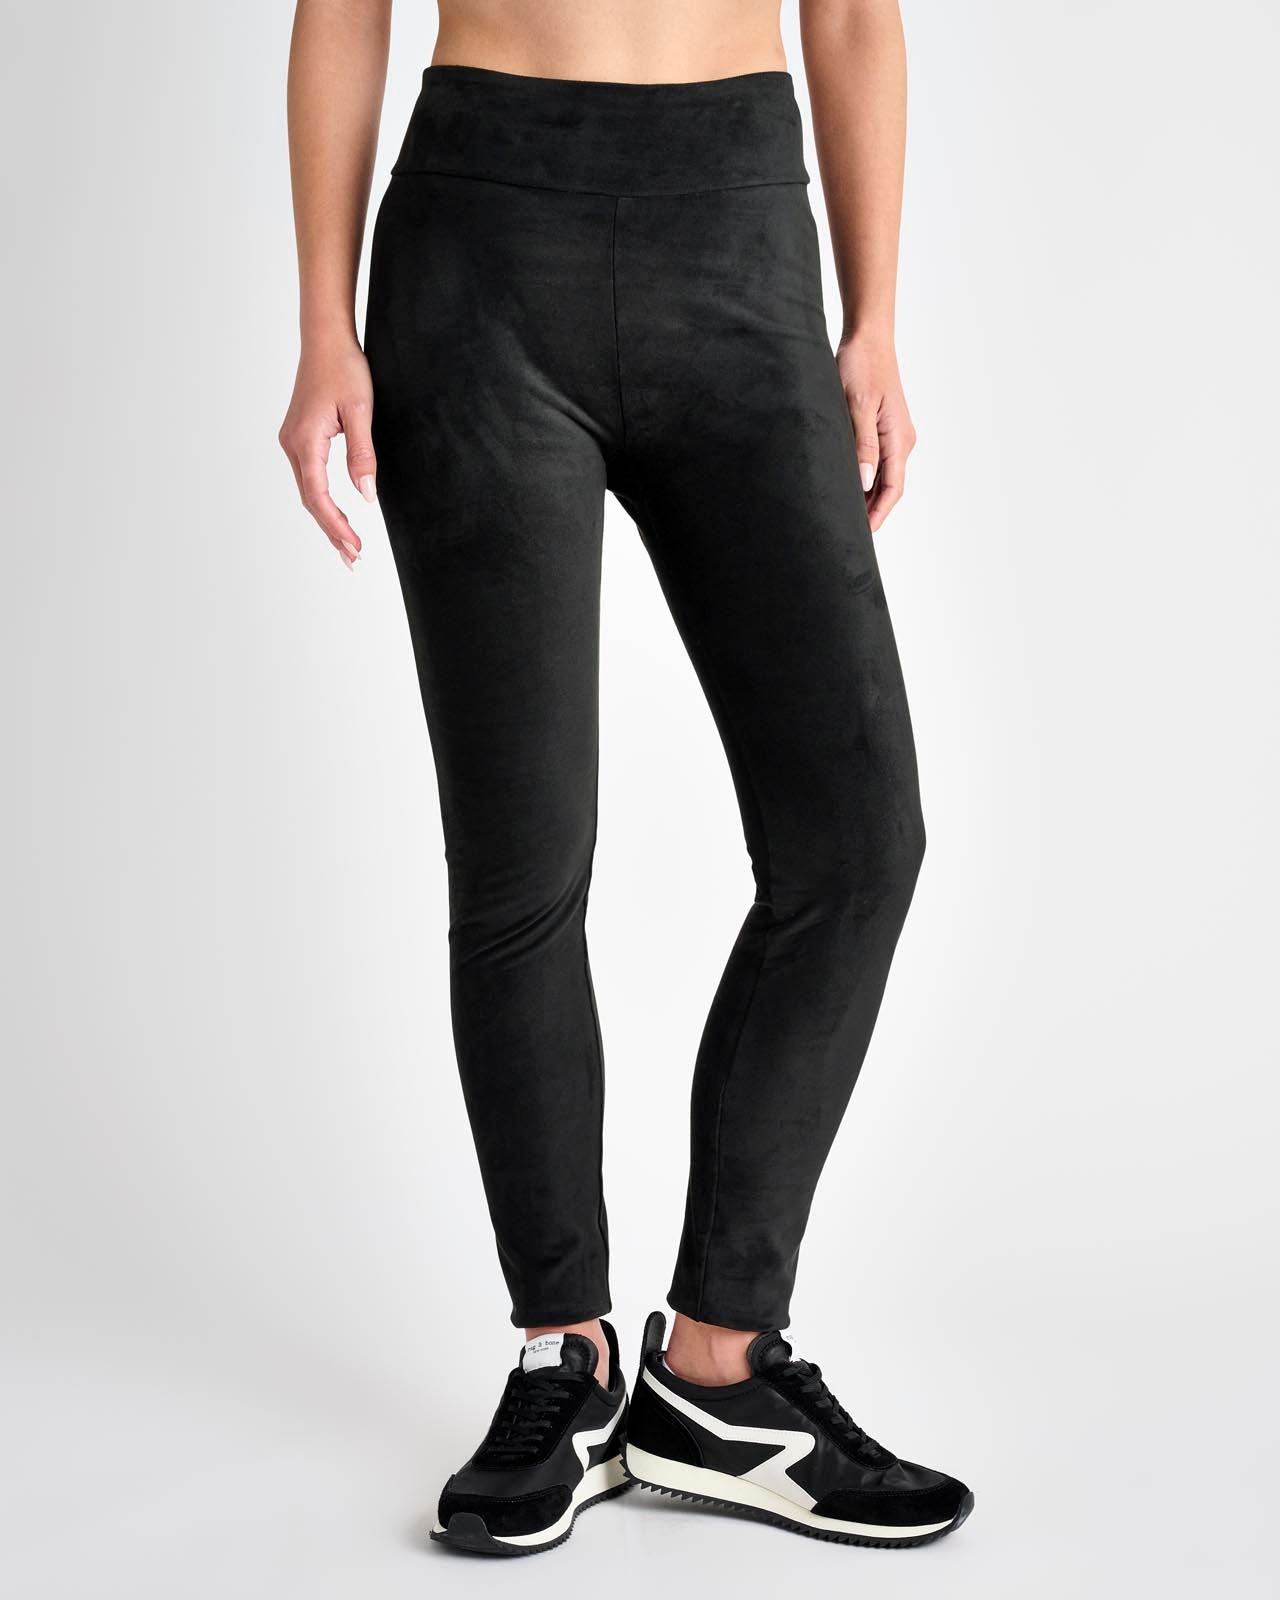 SPLENDID Black Stretch Cotton Leggings Size S NWOT – Style Exchange  Boutique PGH